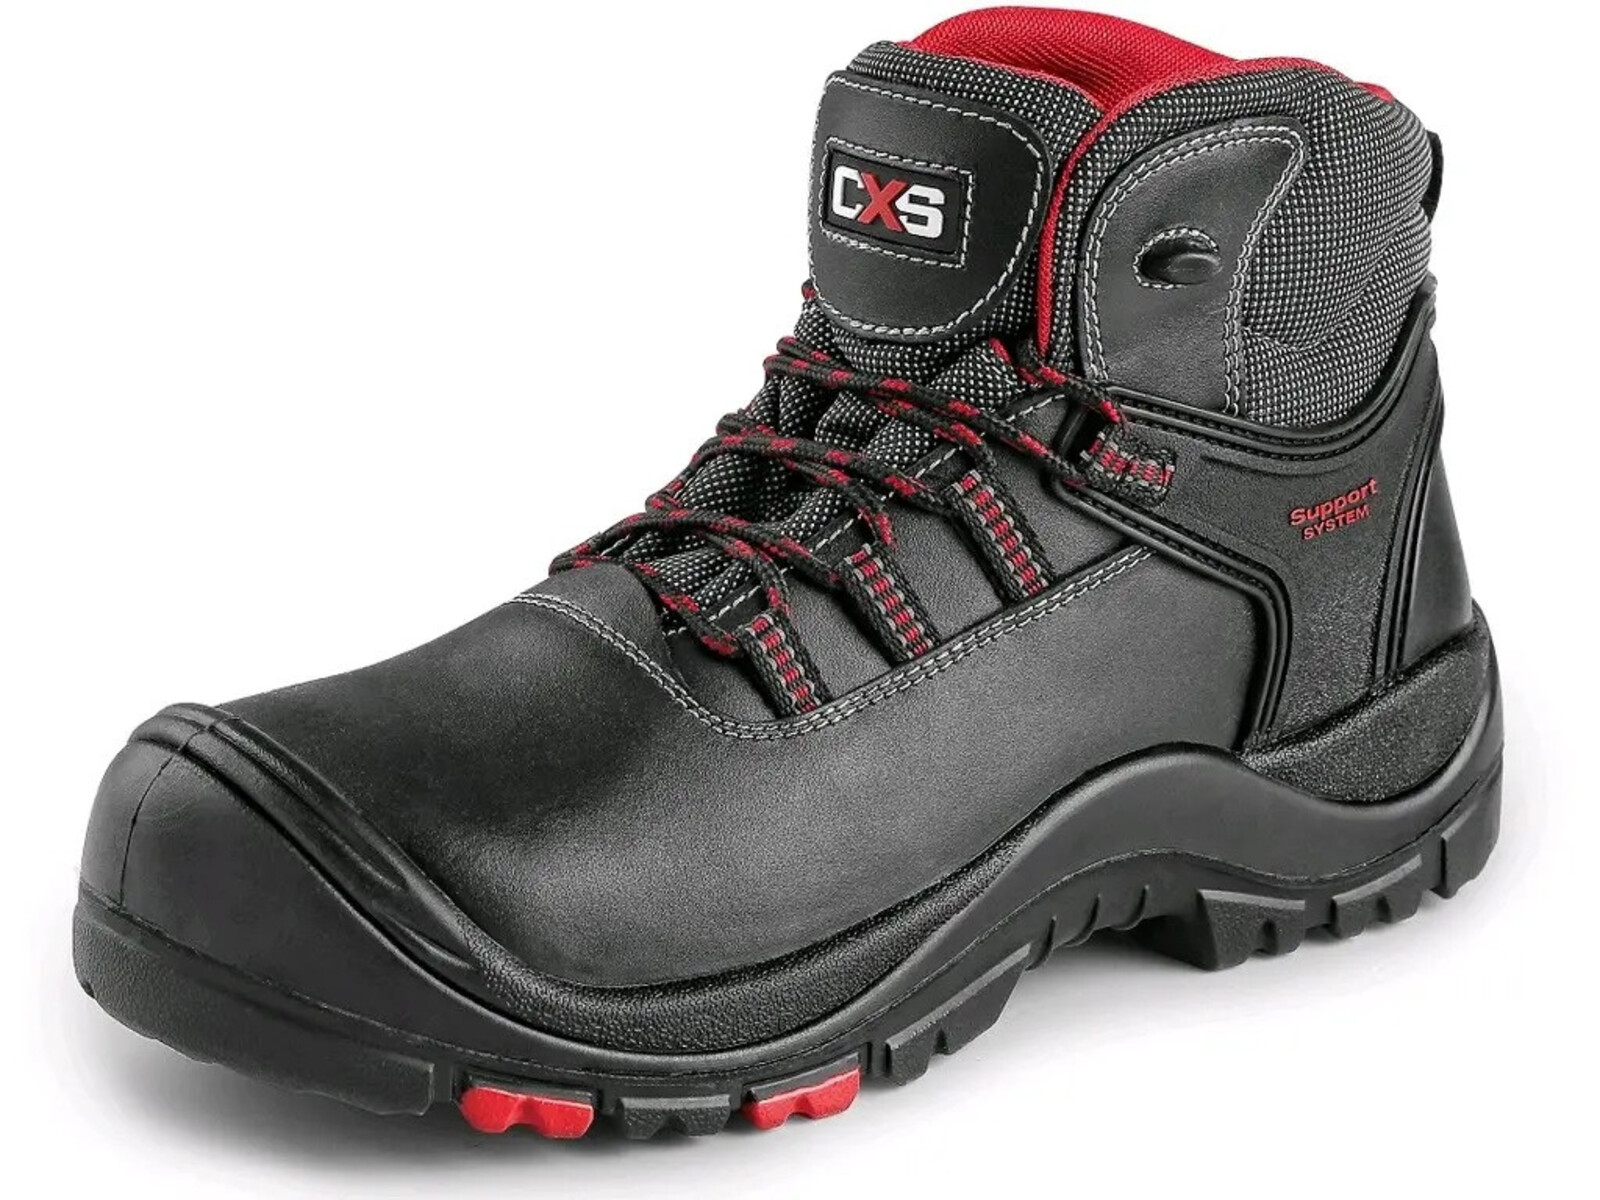 Bezpečnostná členková obuv CXS Rock Granite S3 SRC HRO MF - veľkosť: 50, farba: čierna/červená